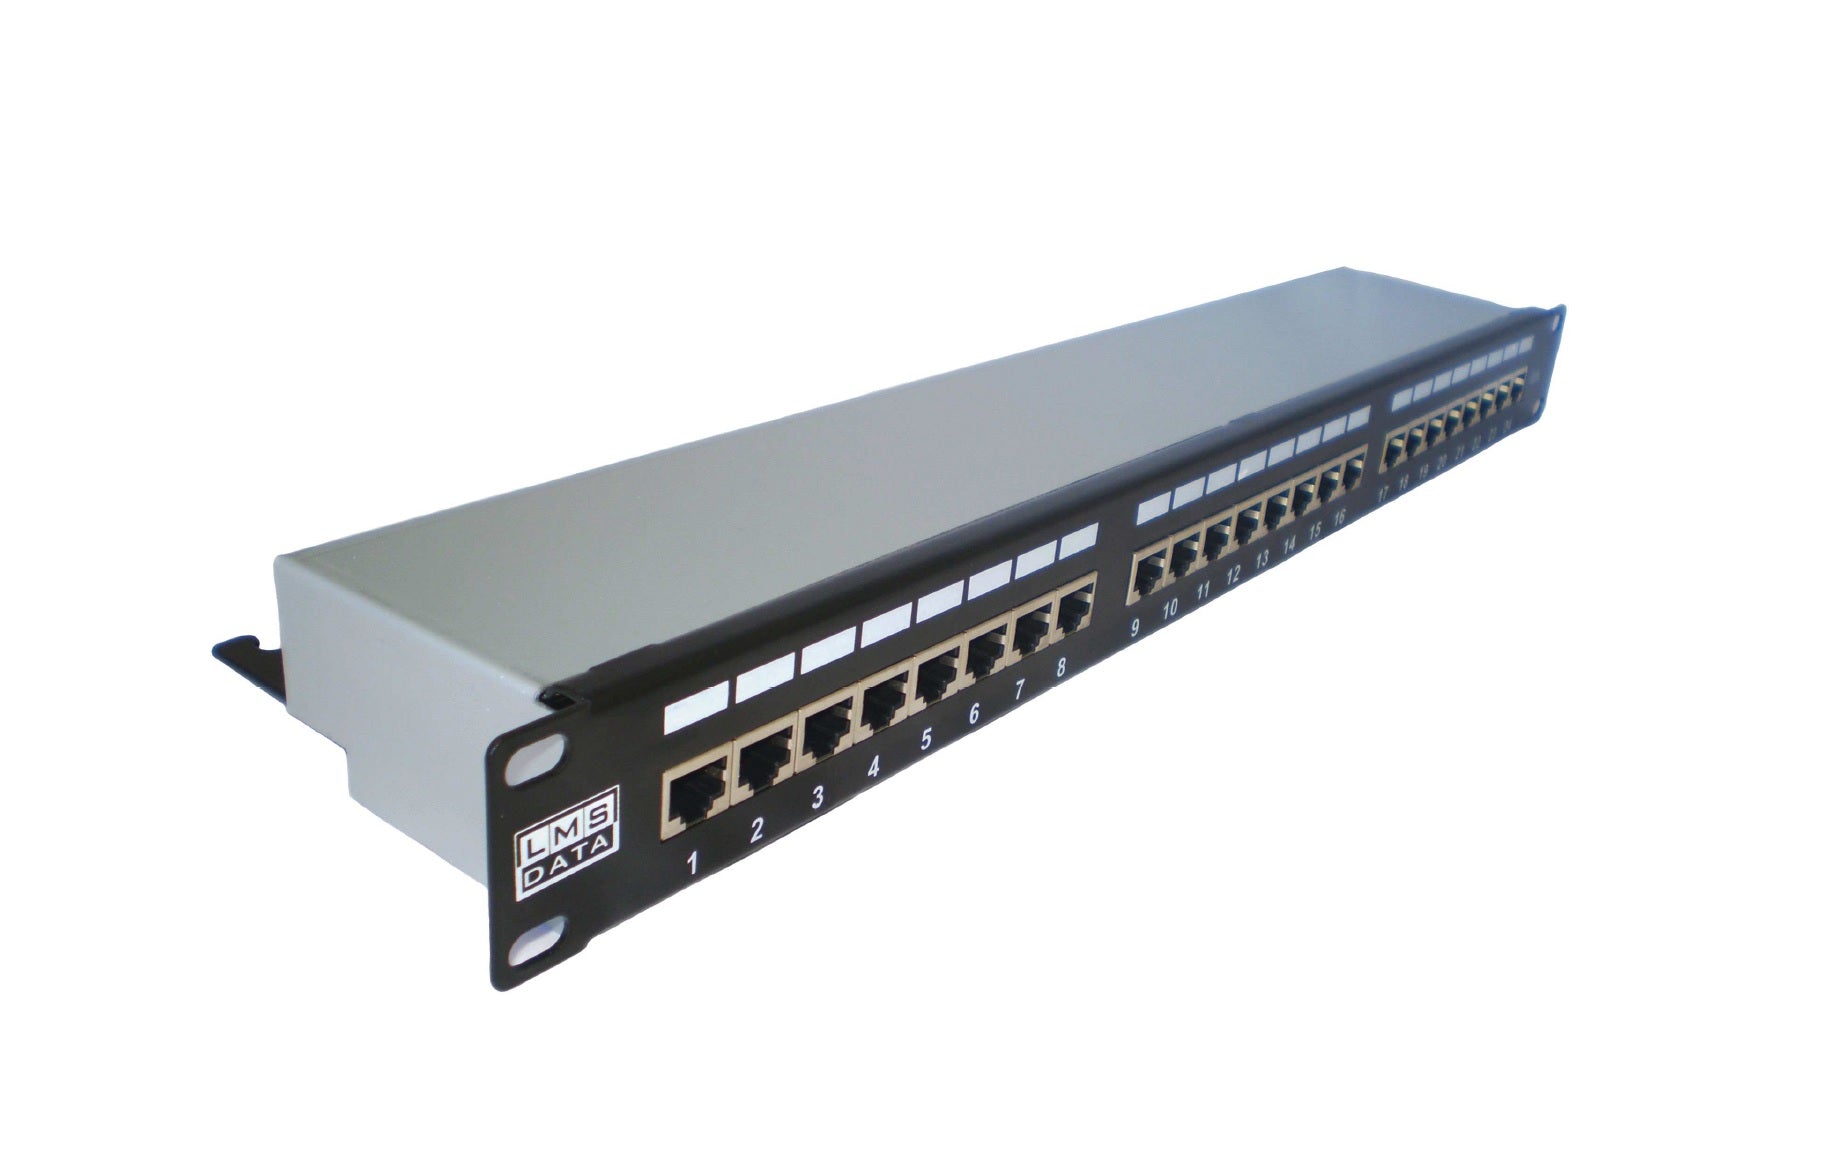 1U 19" 24 Port CAT5E Network RJ45 Vertical Shielded Patch Panel (STP) w/ Cable Management